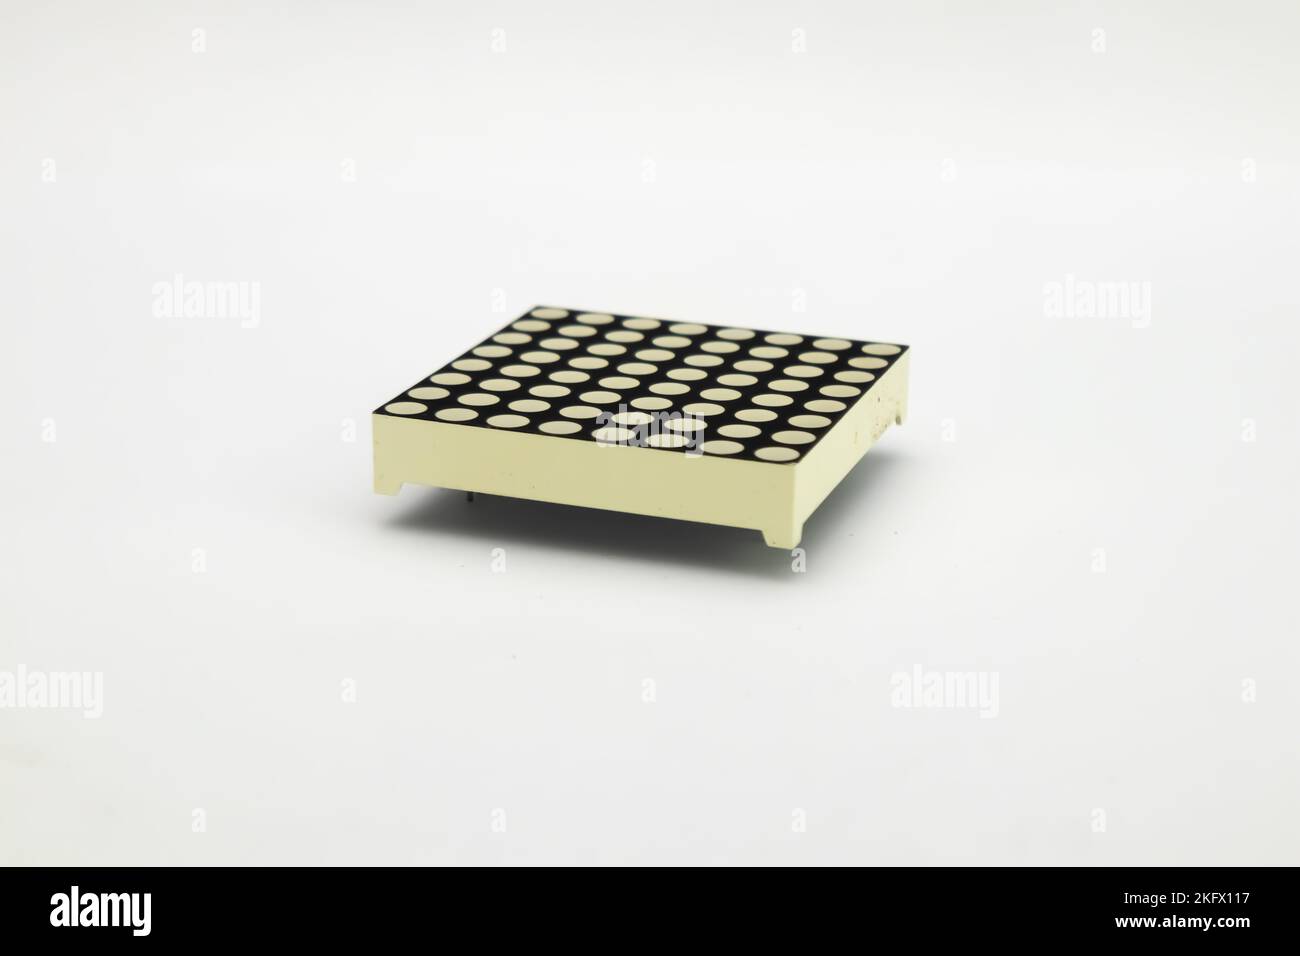 Un modulo LED a matrice di punti. Questa porta viene utilizzata dagli appassionati di elettronica per i materiali fai-da-te. Foto Stock